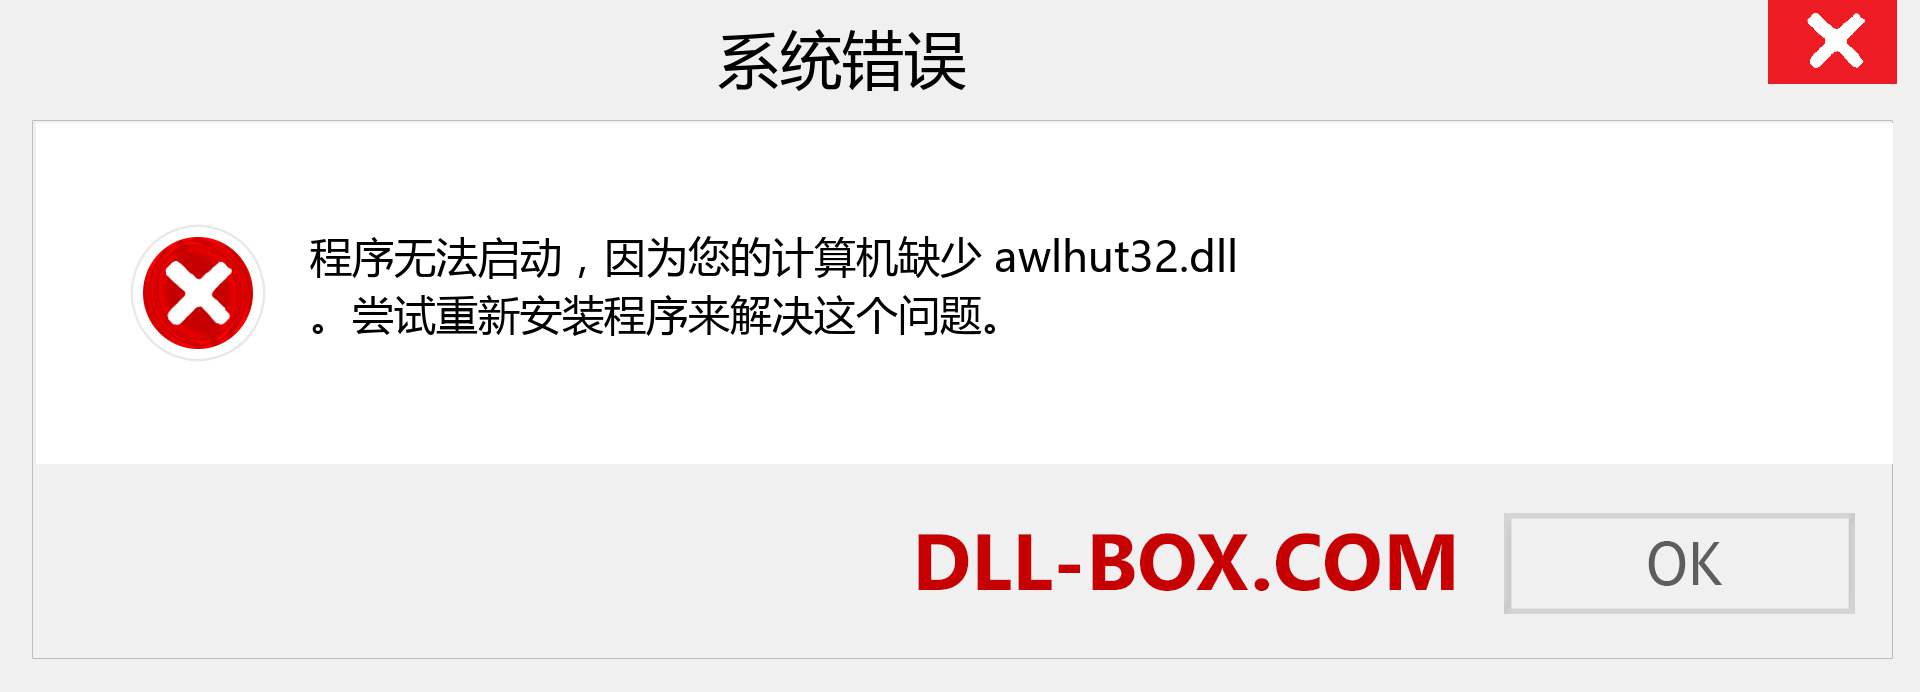 awlhut32.dll 文件丢失？。 适用于 Windows 7、8、10 的下载 - 修复 Windows、照片、图像上的 awlhut32 dll 丢失错误